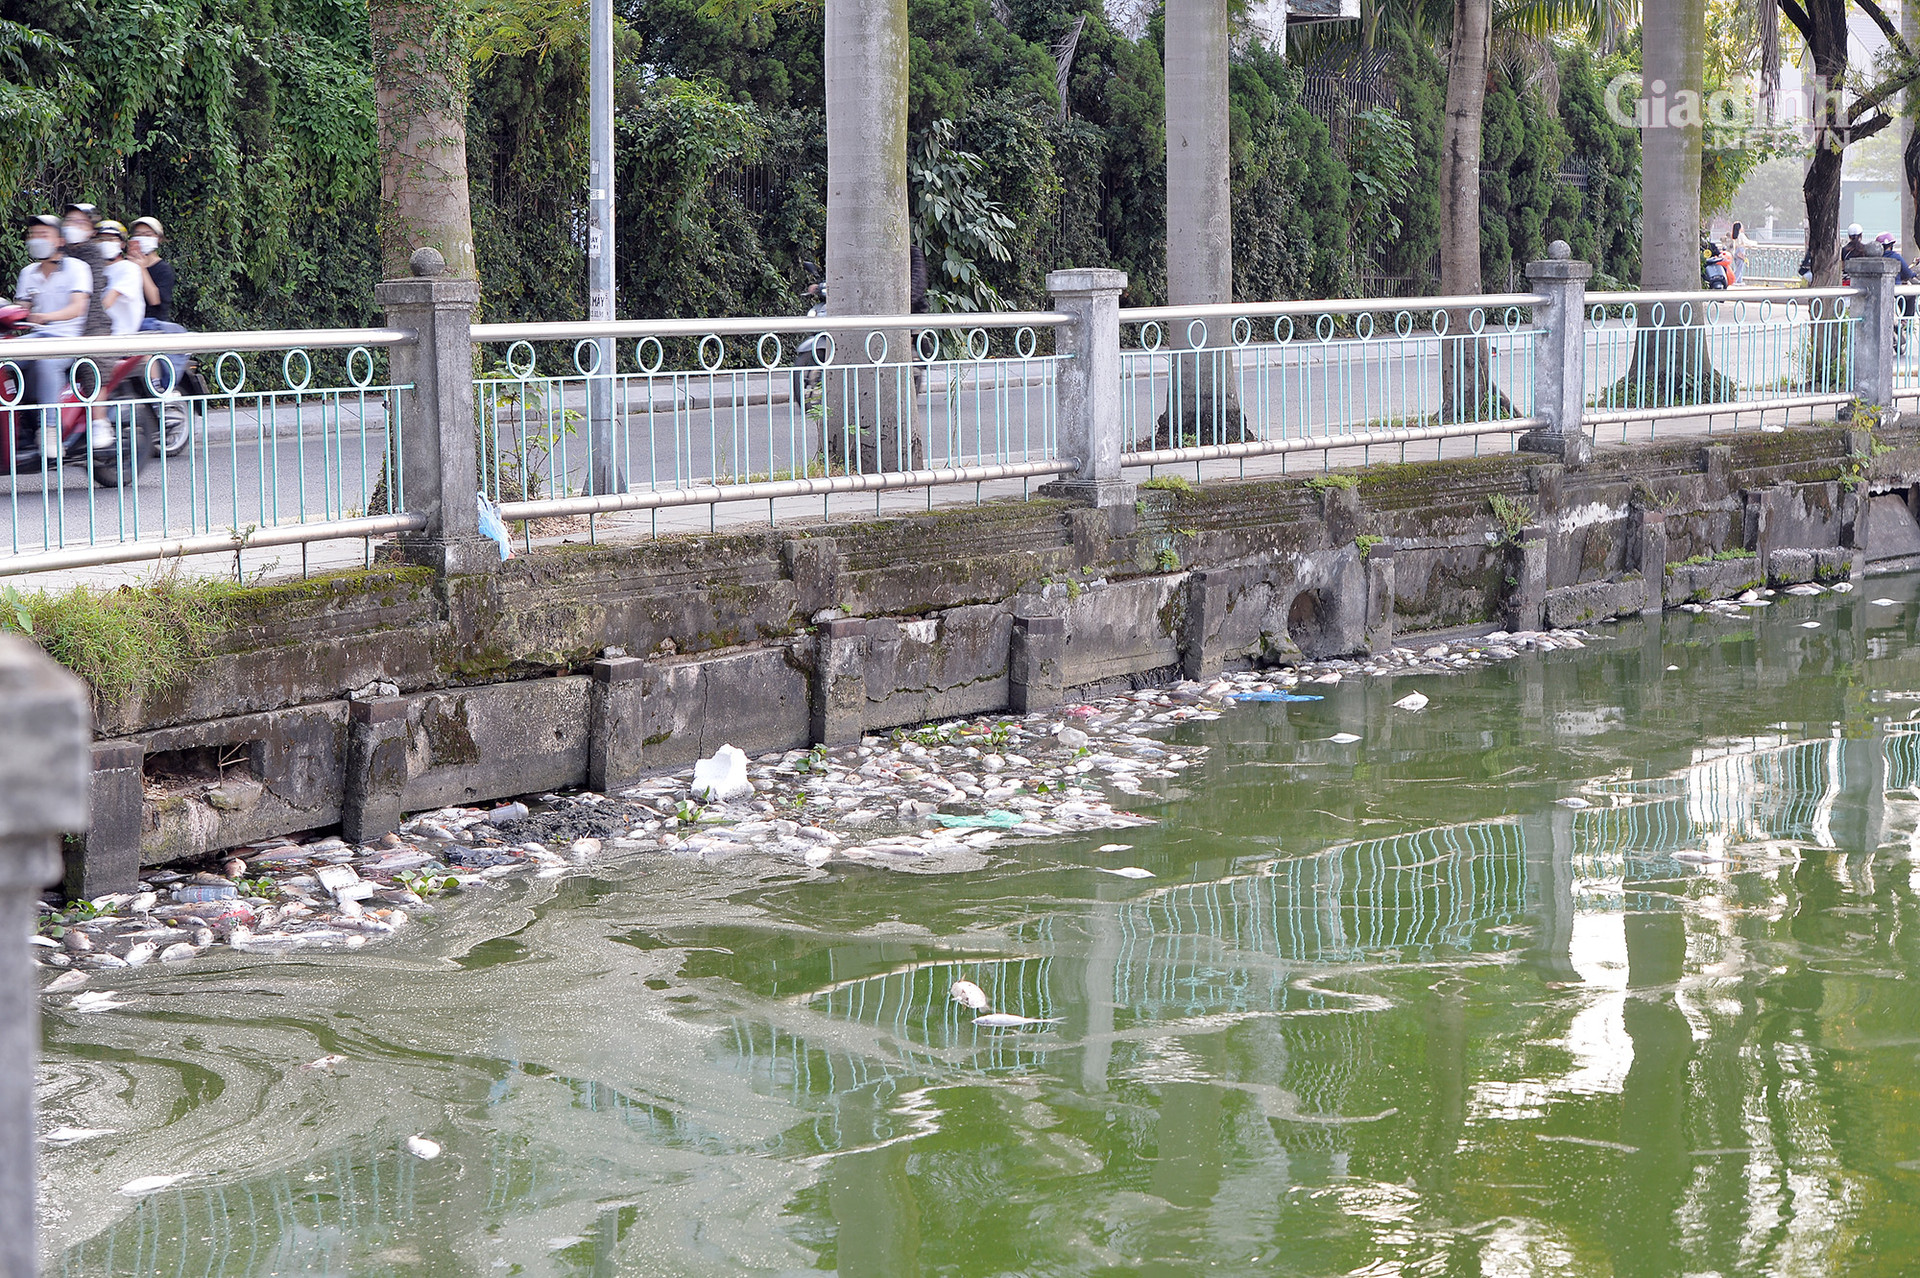 Hà Nội: Cá chết trắng ở Hồ Tây, cư dân chịu mùi hôi thối hơn 1 tuần qua - Ảnh 5.